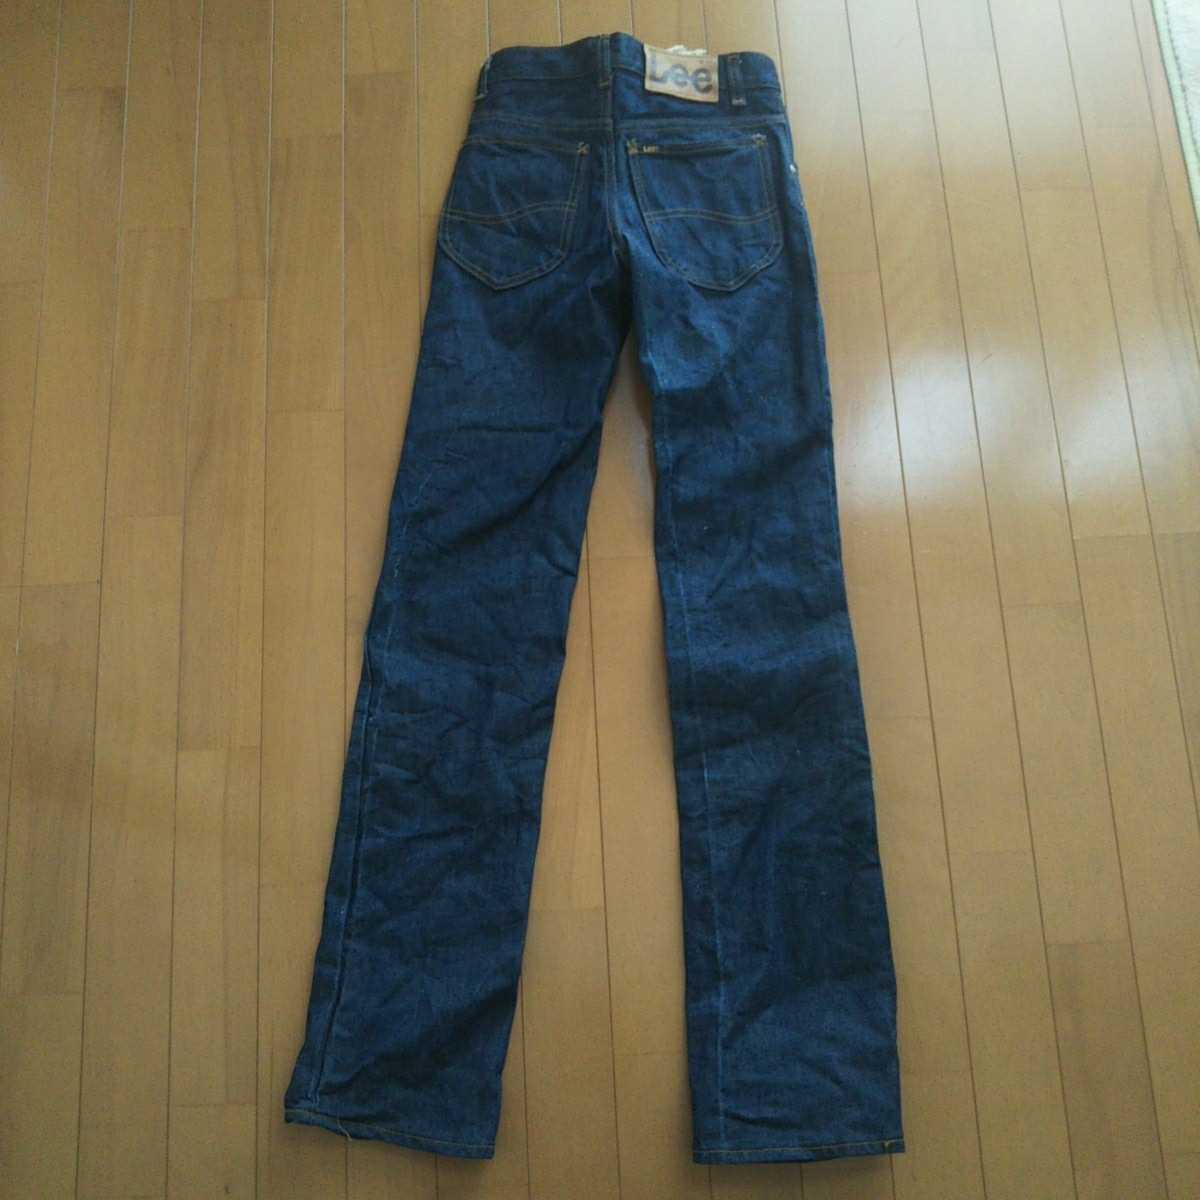 70s Vintage Lee Lee 241 джинсы американский производства неиспользуемый товар TALON 42 ZIPPER W25(64cm)